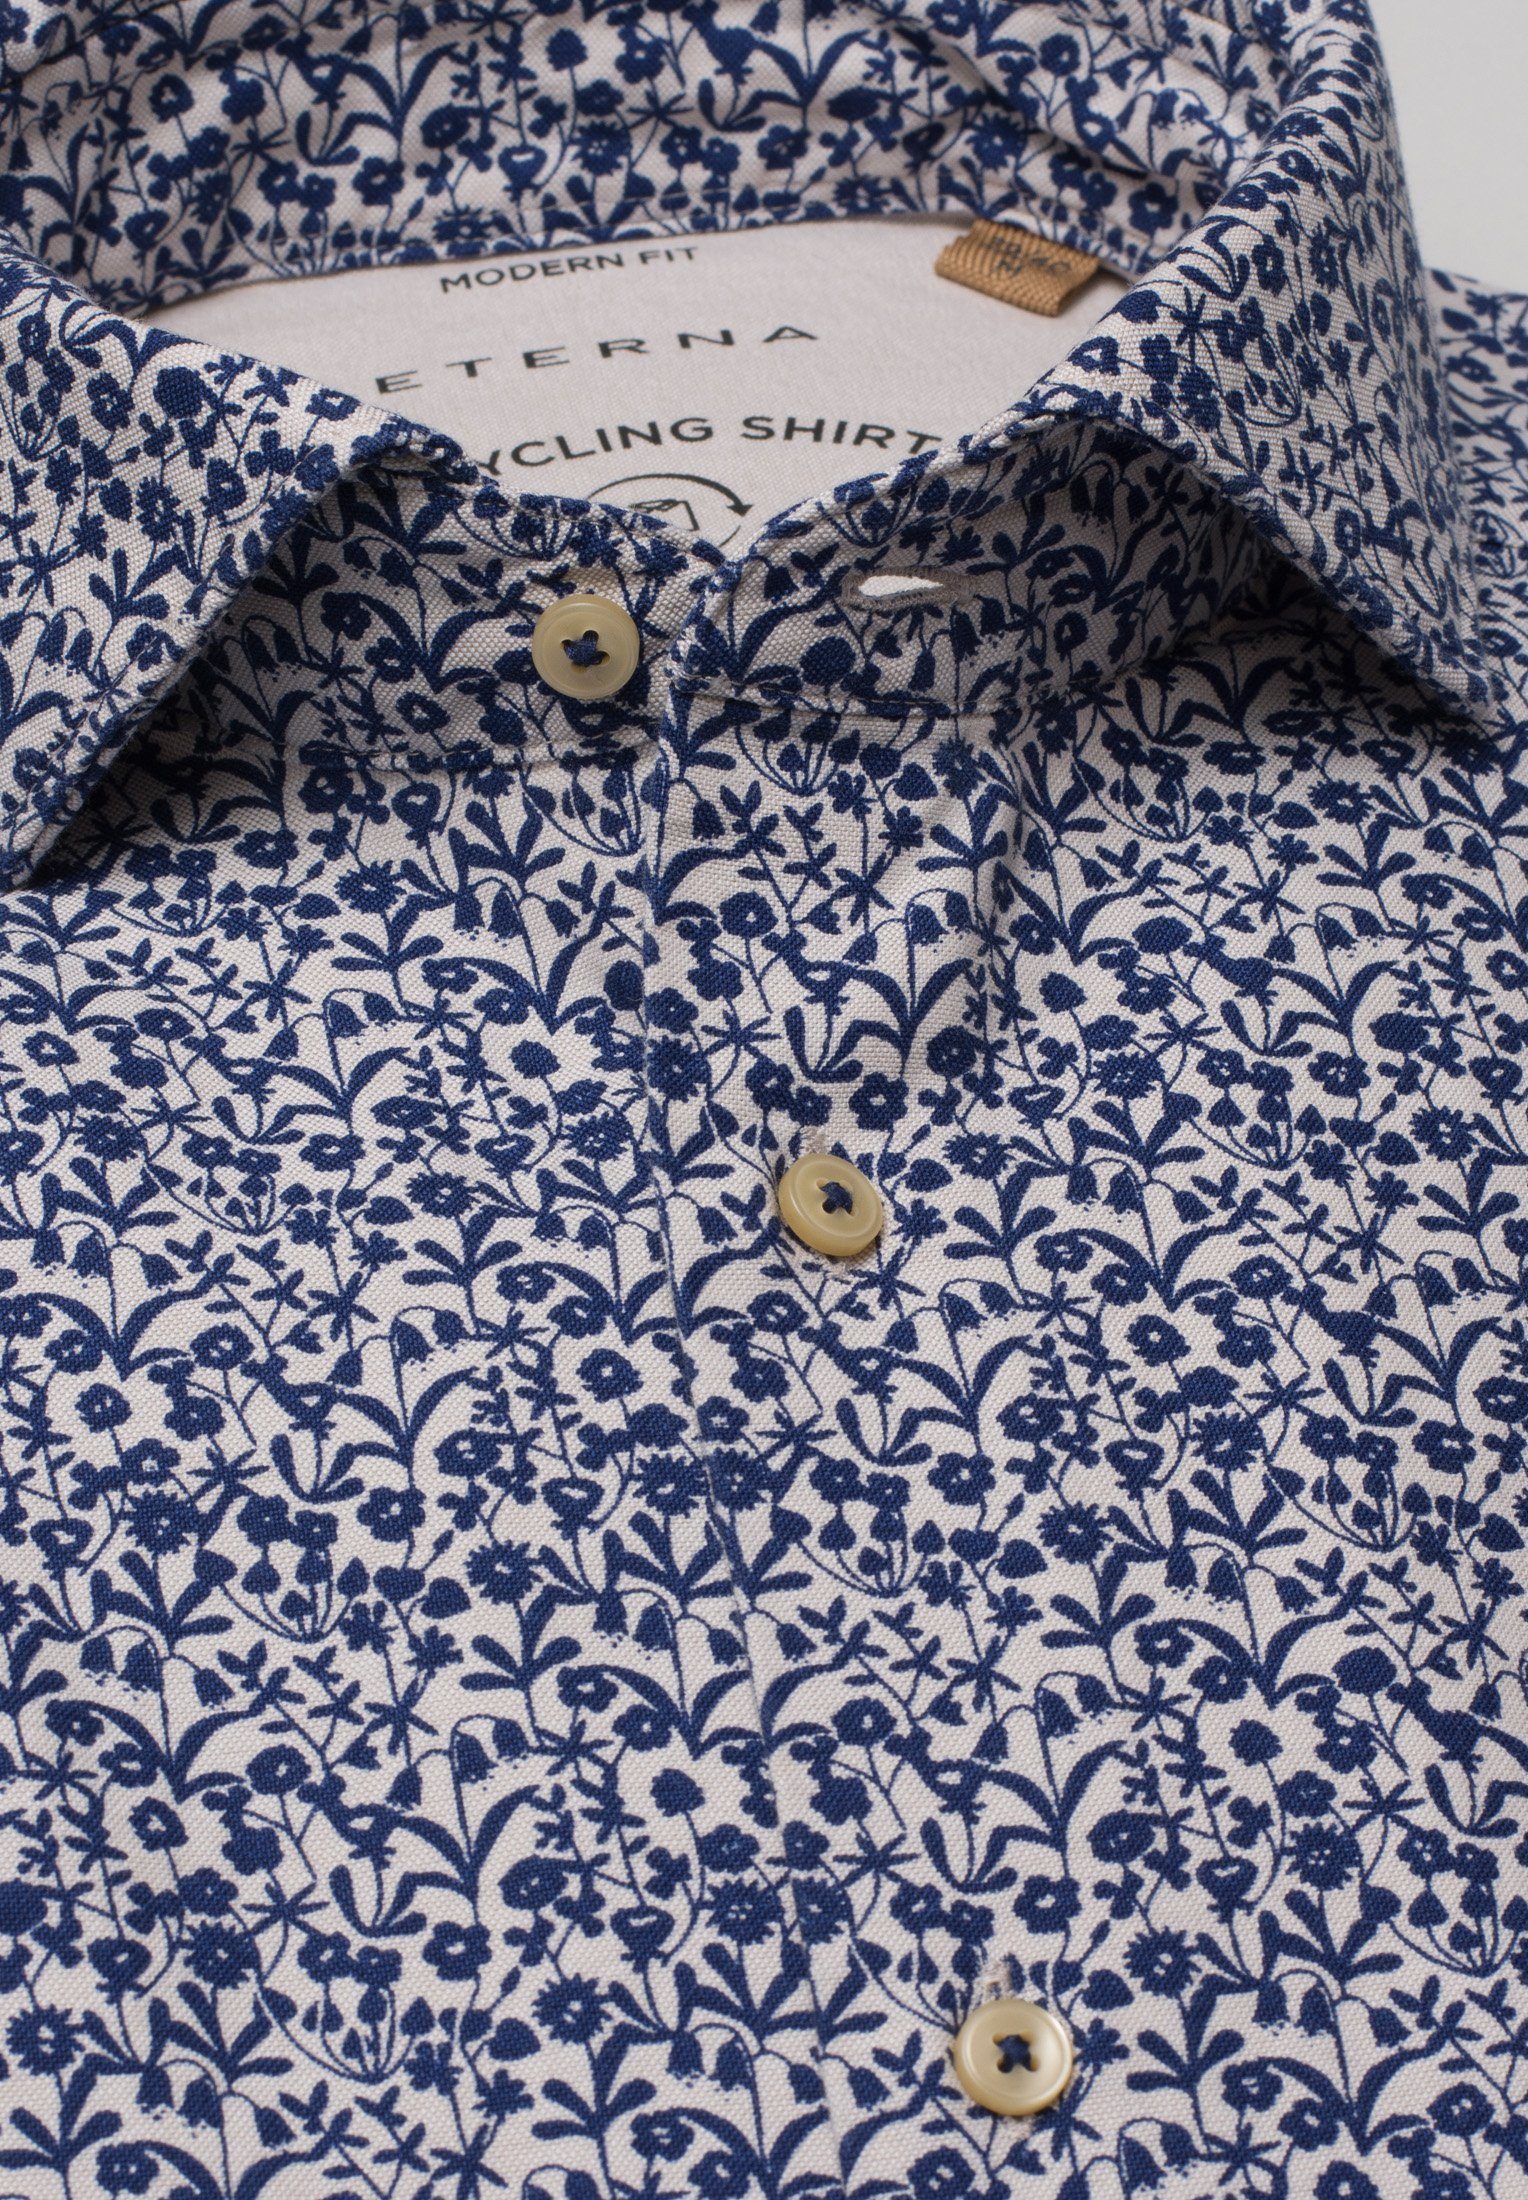 2431-18-VS blau-weiss Eterna floral Klassische FIT REGULAR UPCYCLING Langarm Hemd blau-weiß Bluse ETERNA floral